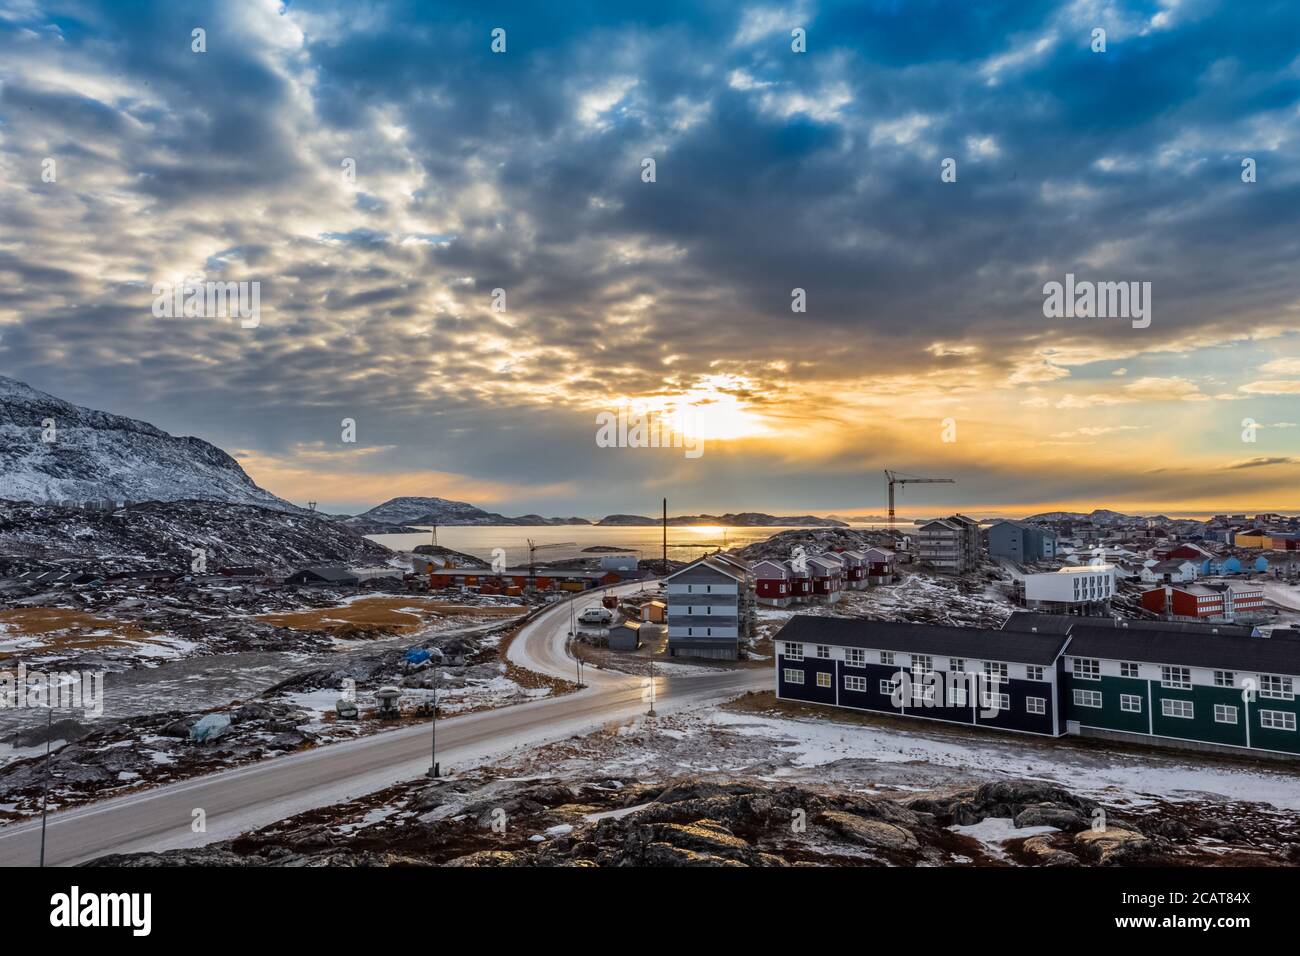 Maisons de l'Arctique poussant sur les collines rocheuses à sunset panorama. Nuuk, Groenland Banque D'Images